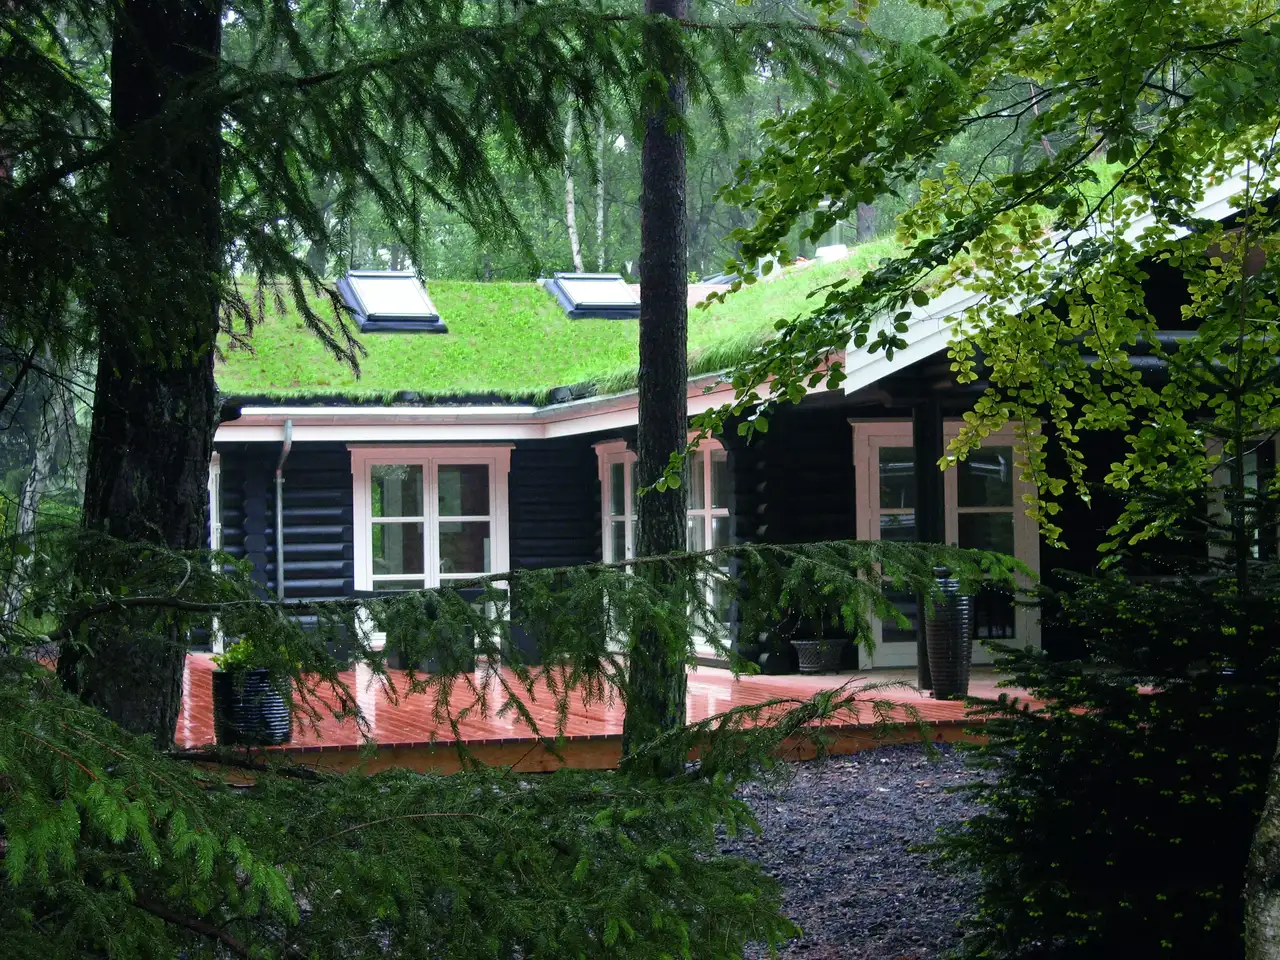 Entzückende Waldhütte mit grünem Dach und VELUX Fenstern inmitten von Bäumen.